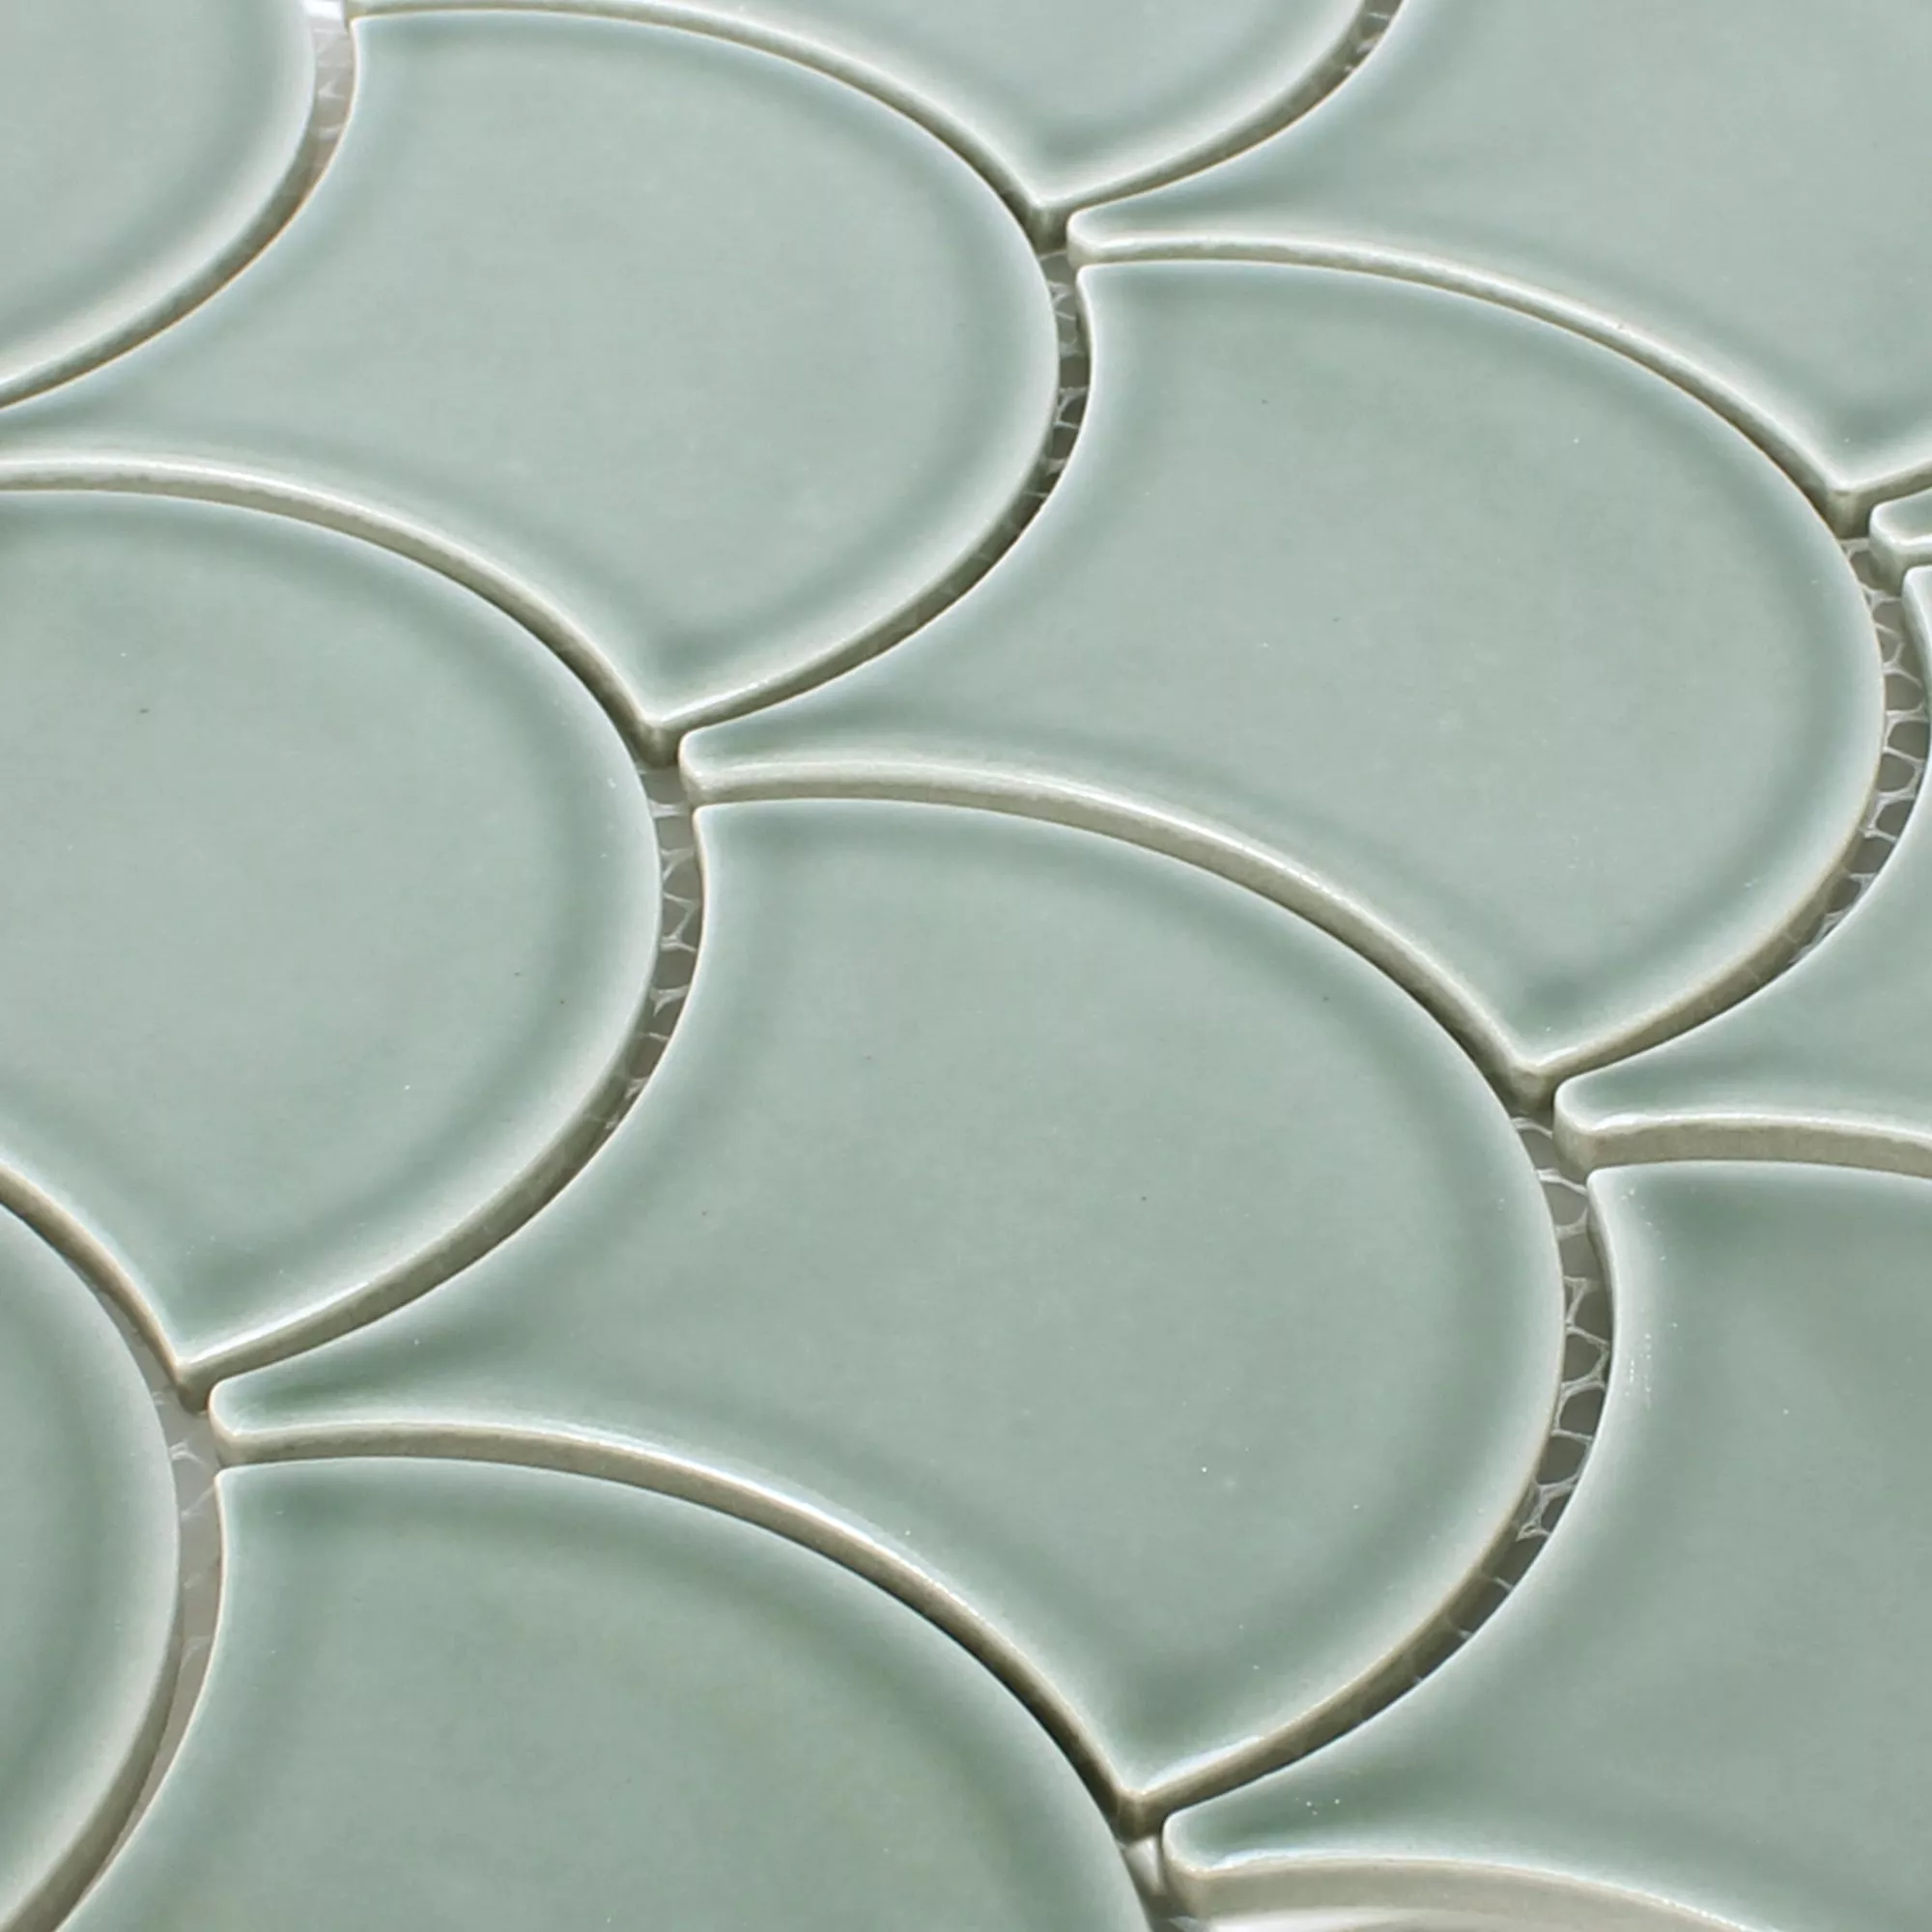 Sample Ceramic Mosaic Tiles Madison Green